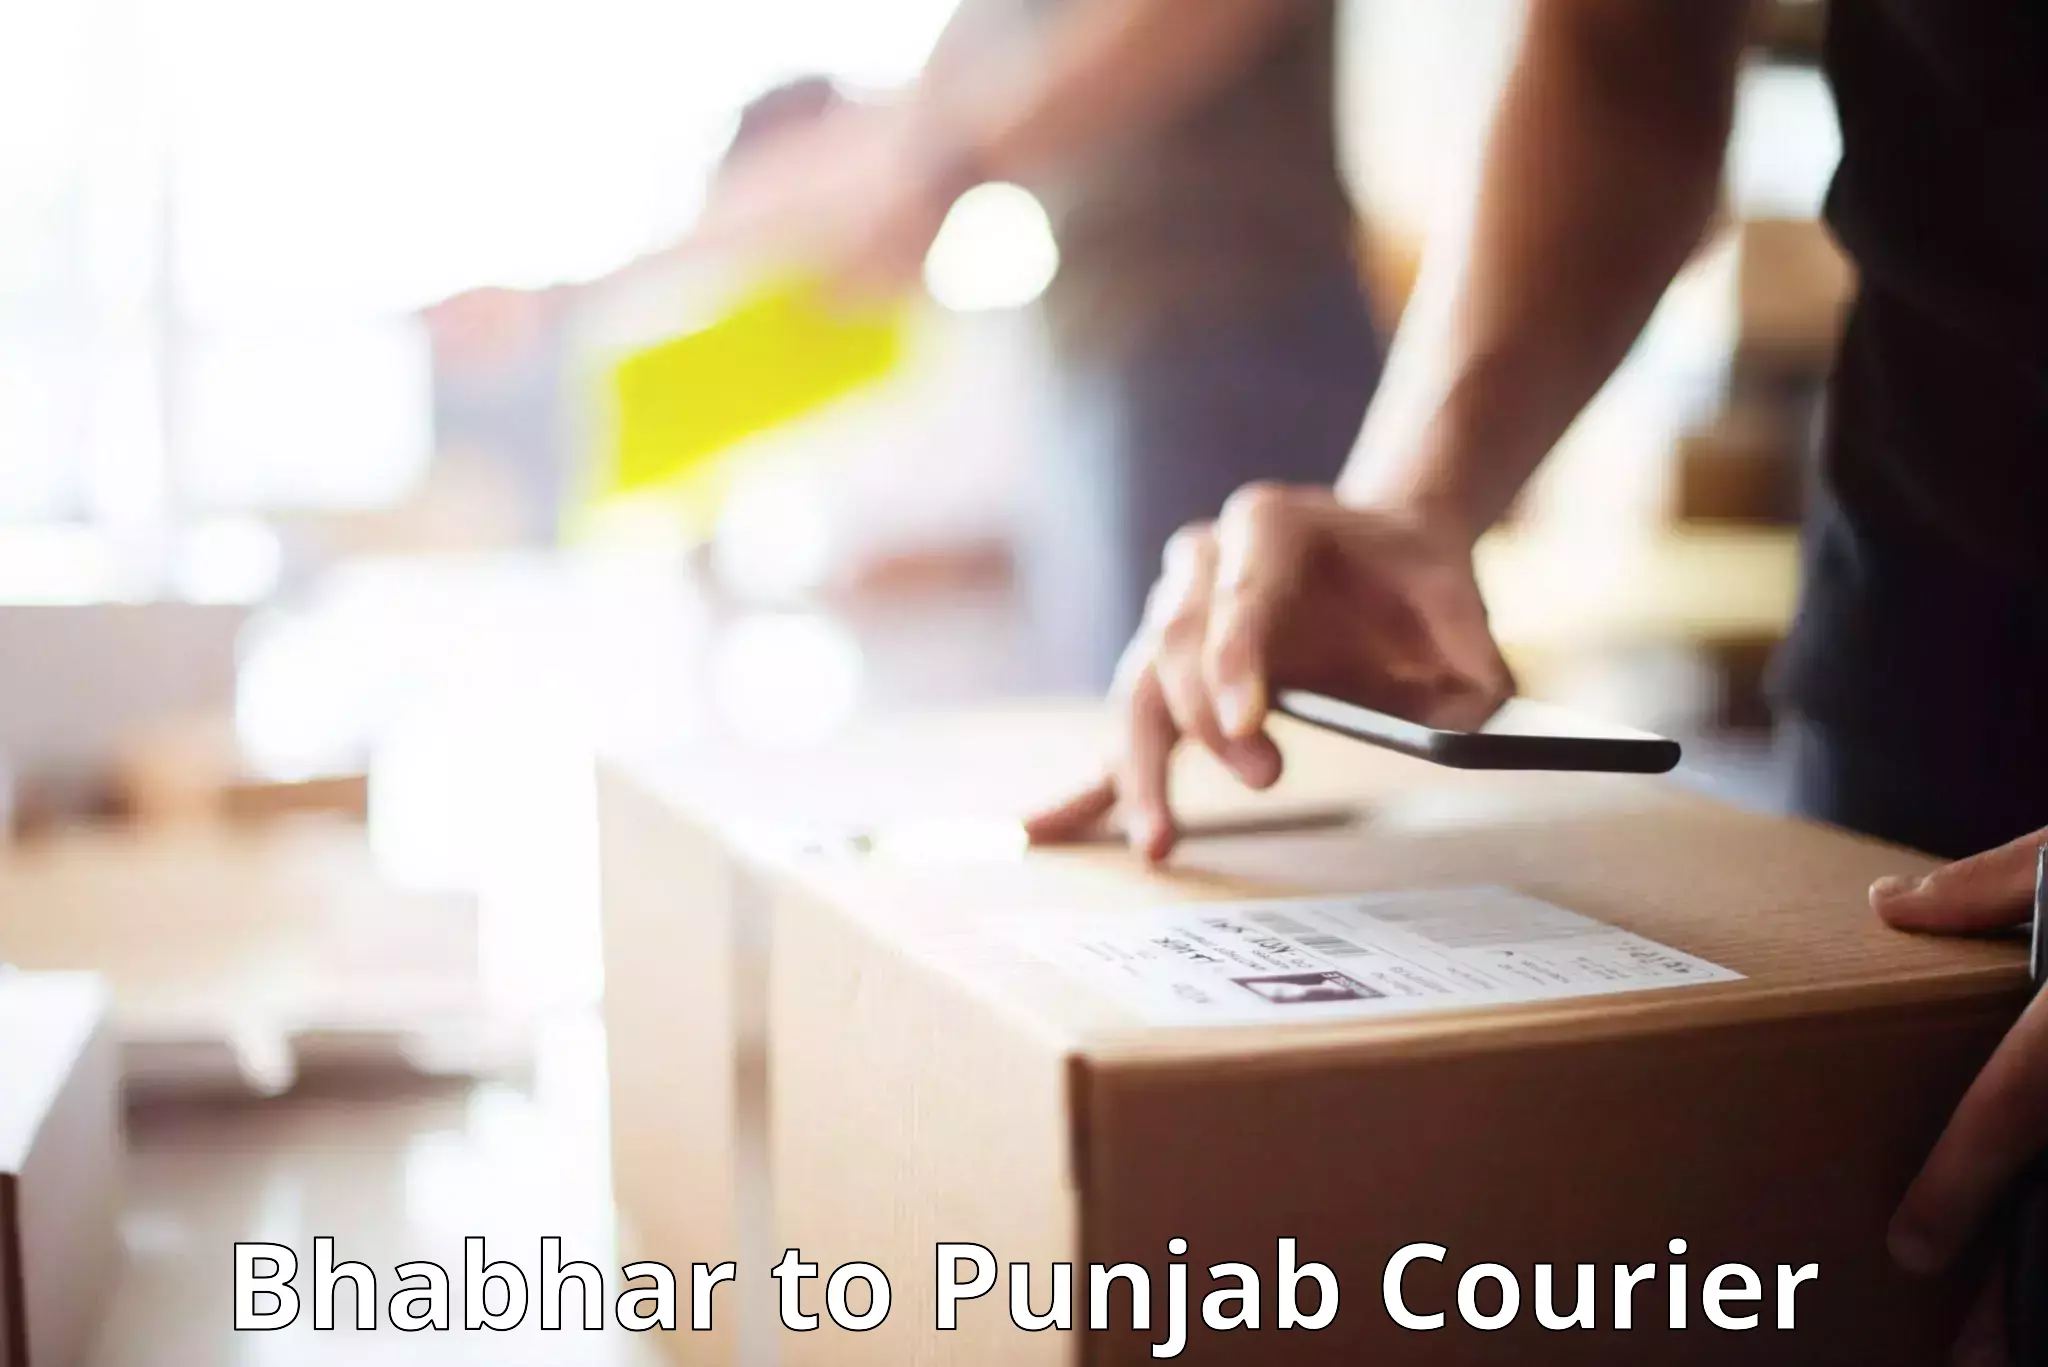 Luggage delivery app Bhabhar to Central University of Punjab Bathinda